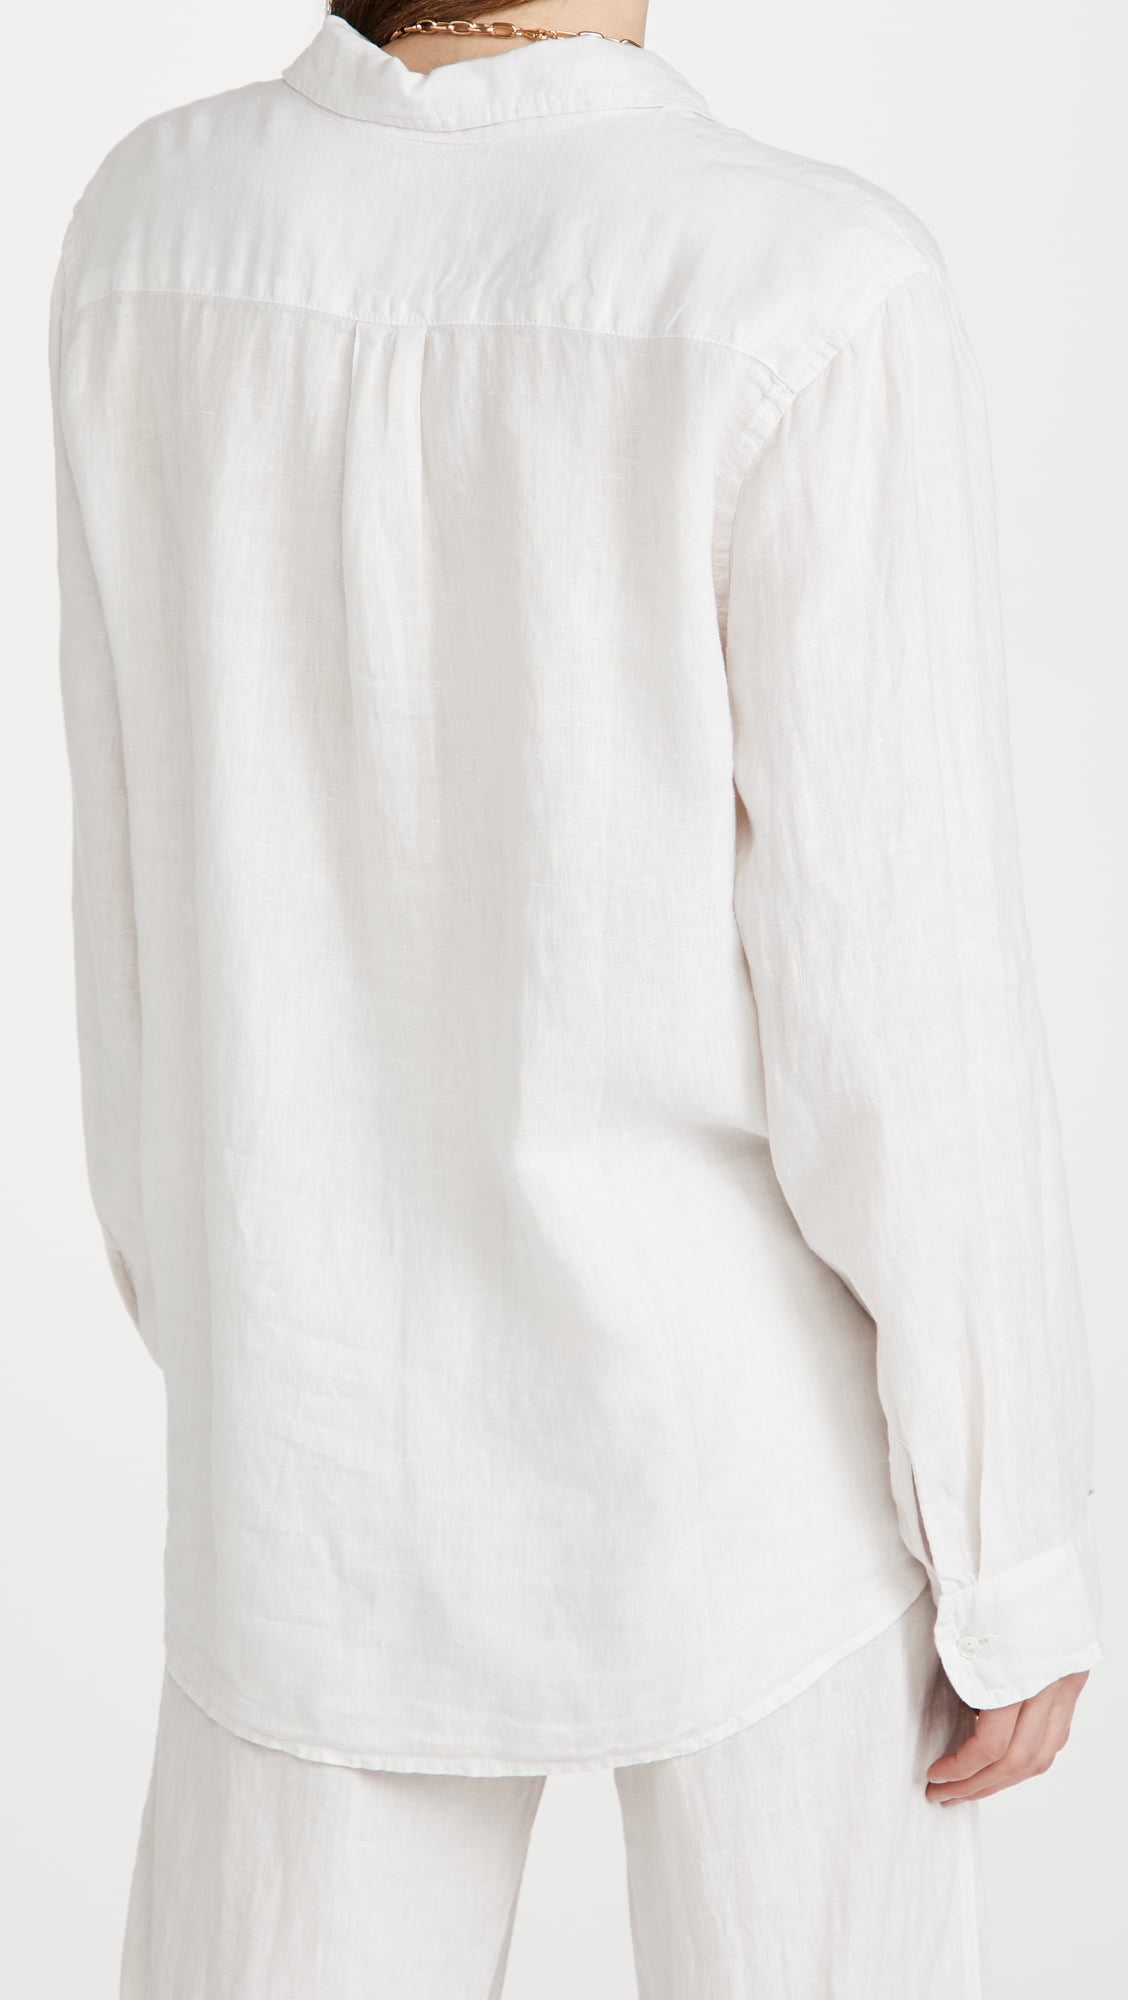 Velvet by Jenny Graham Mulholland Woven Linen Shirt